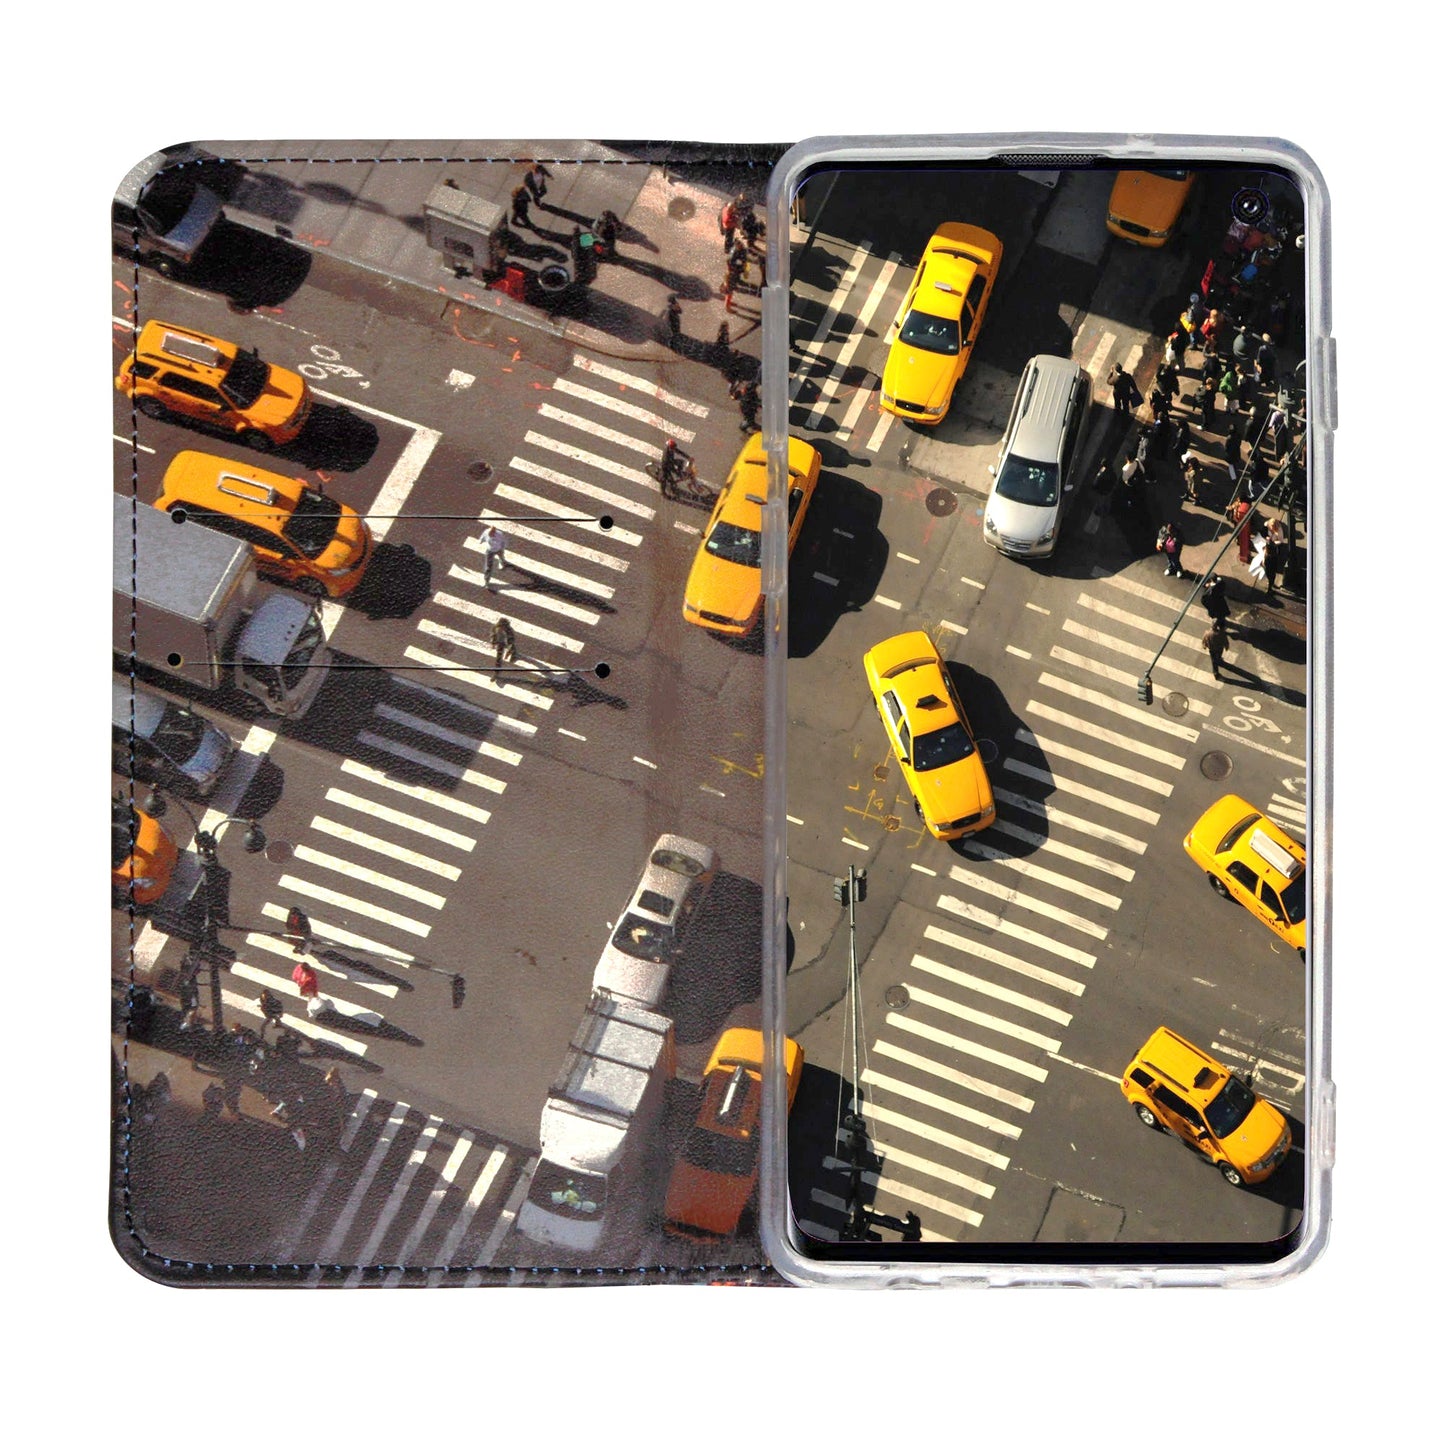 Coque panoramique New York City pour Samsung Galaxy S10